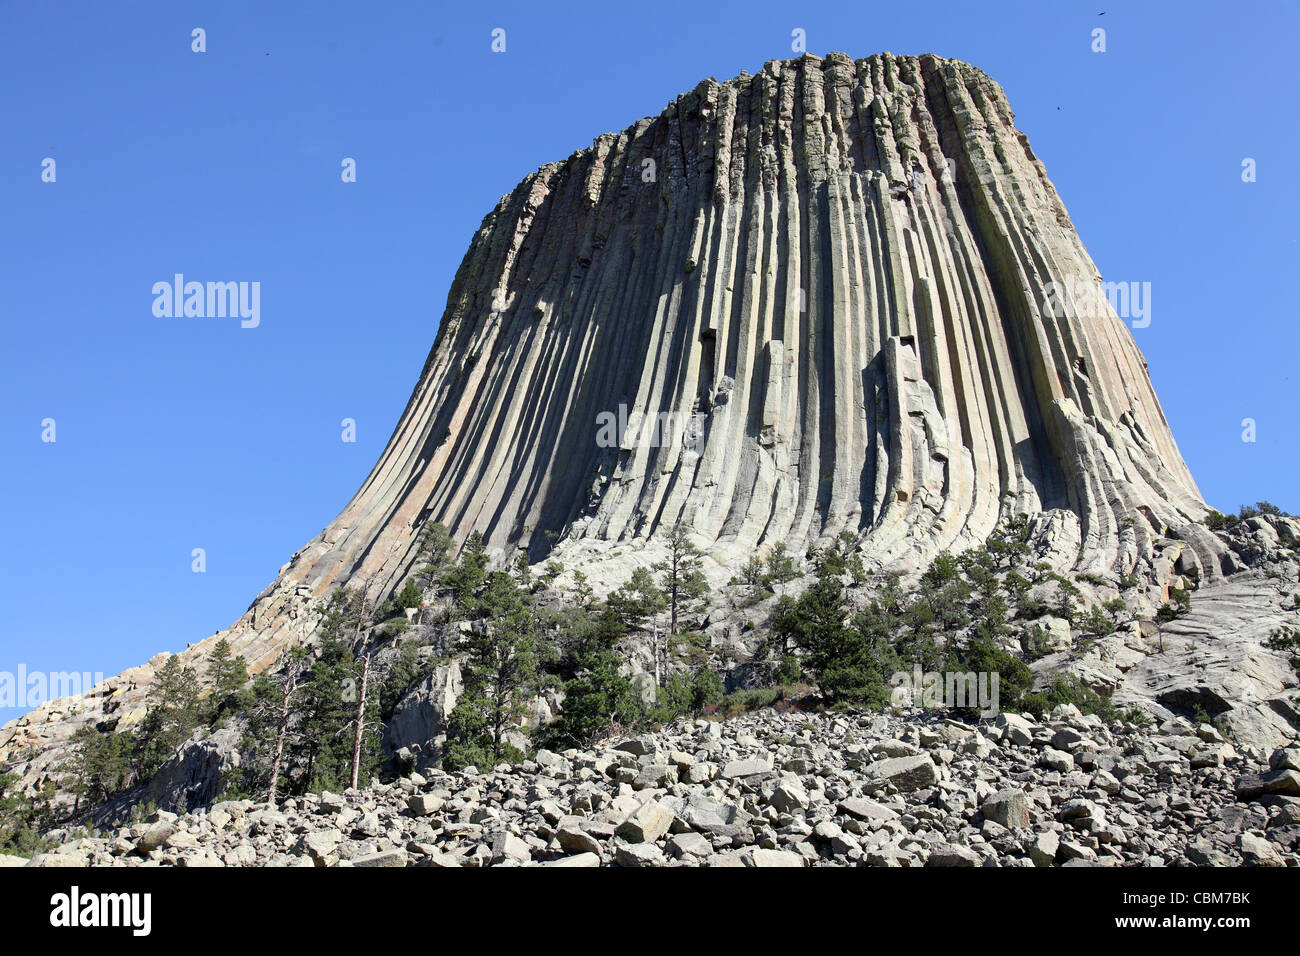 Settembre 15, 2009 - Devils Tower, una monolitica roccia ignea intrusione o laccolith fatta di colonne di porfido fonolite, Wyoming. Foto Stock